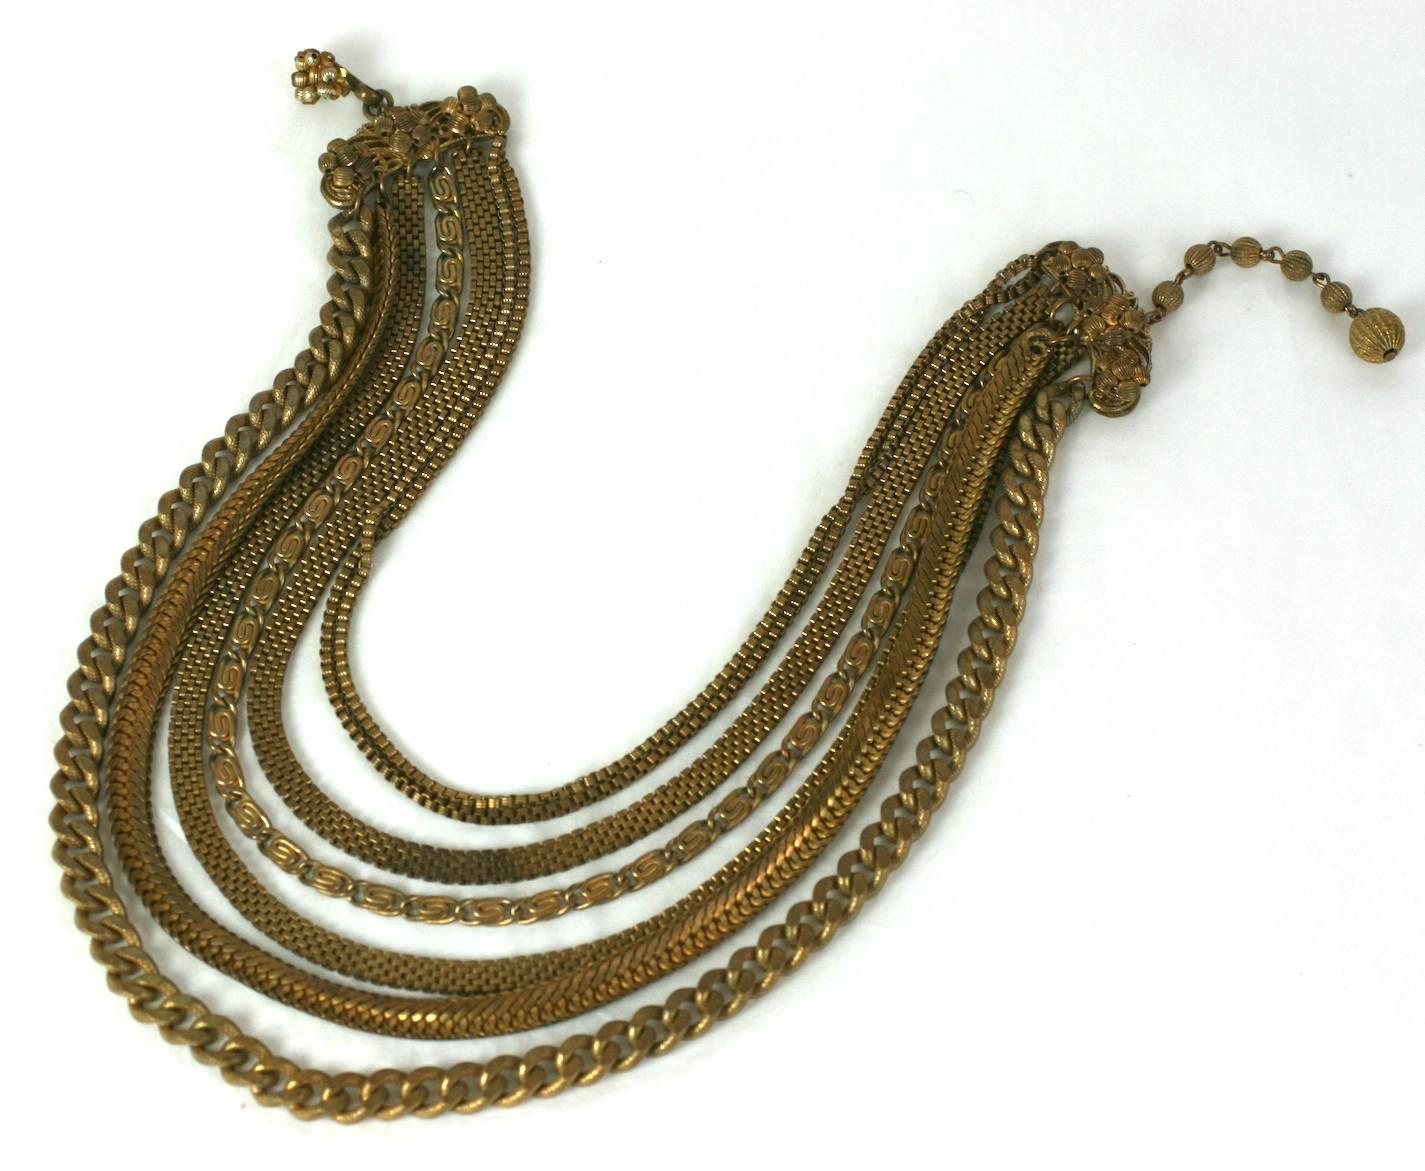 Miriam Haskell mehrkettige drapierte Halskette aus gedämpfter russischer Goldsignatur. Eine schöne Auswahl an verschiedenen Kettenstilen. 1950er Jahre USA.  Ausgezeichneter Zustand. 
Länge 14